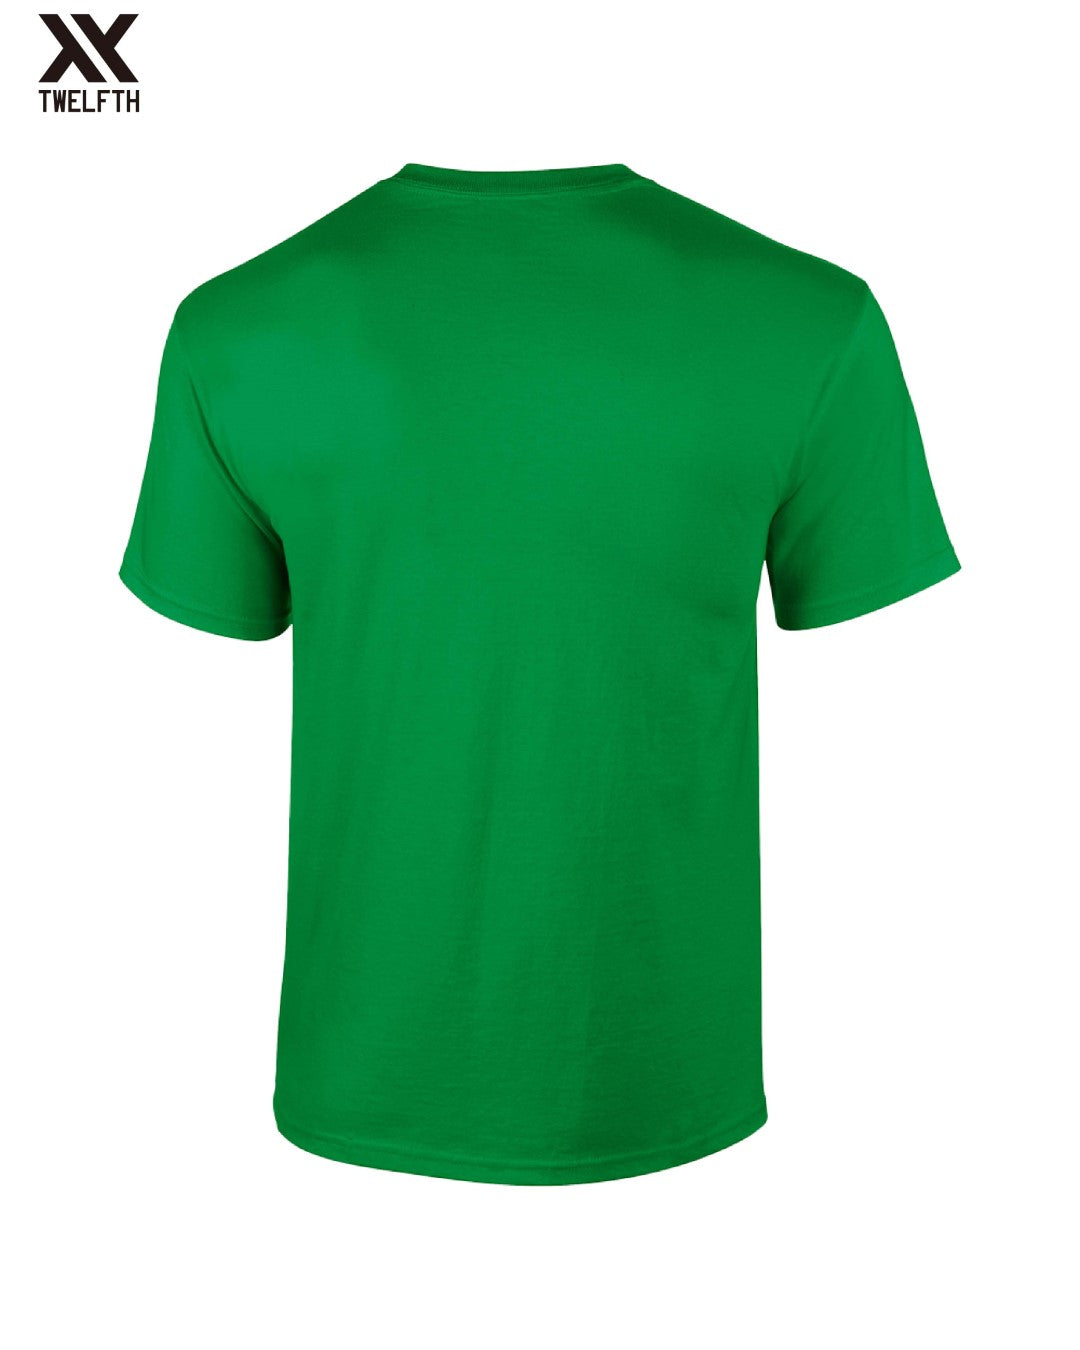 Wolfsburg Crest T-Shirt - Mens